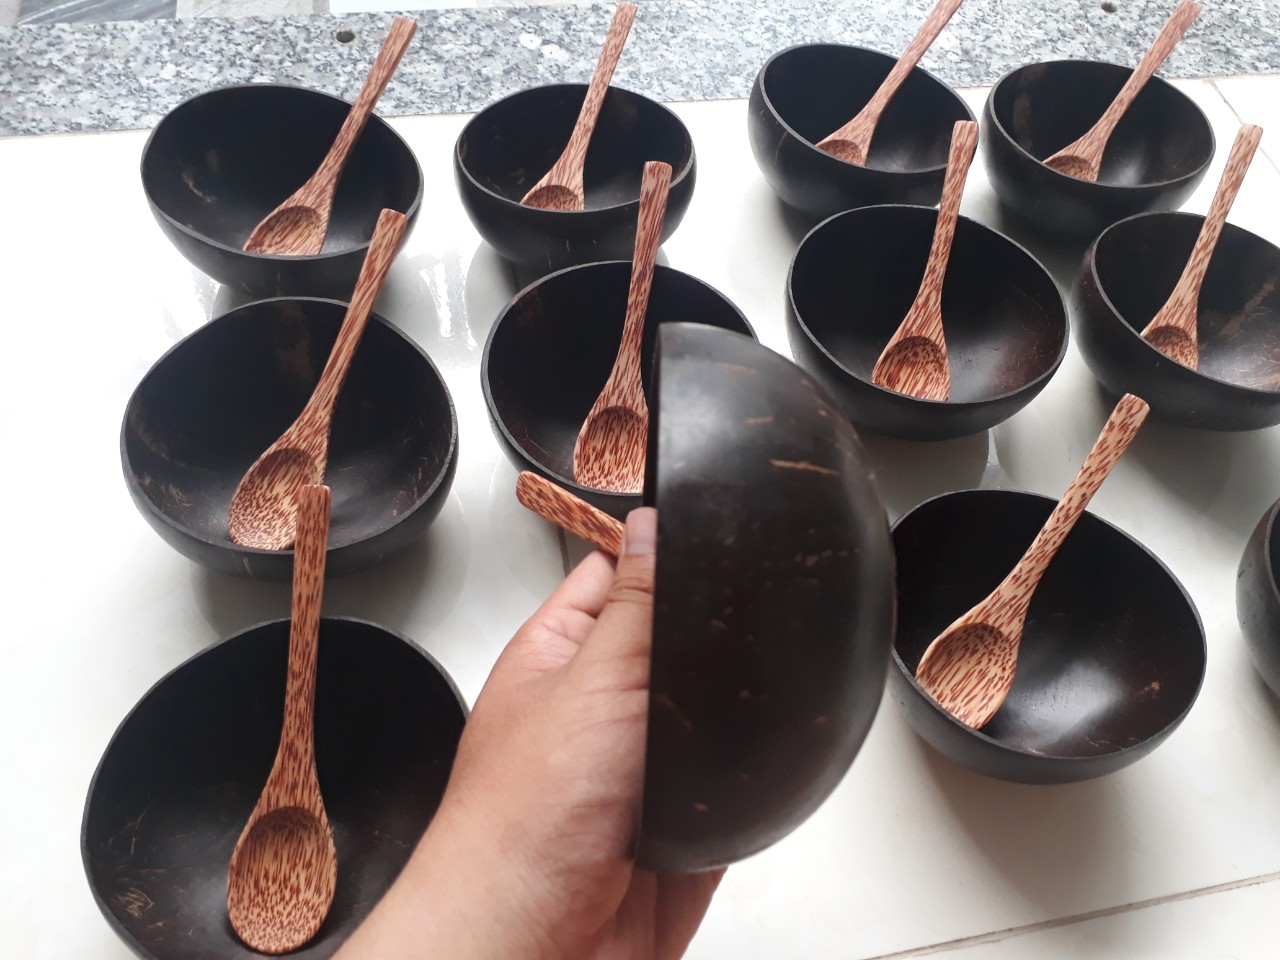 Bát gáo dừa bộ 10 bát 10 muỗng gỗ dừa - Mỹ Nghệ Dừa Nam Trang